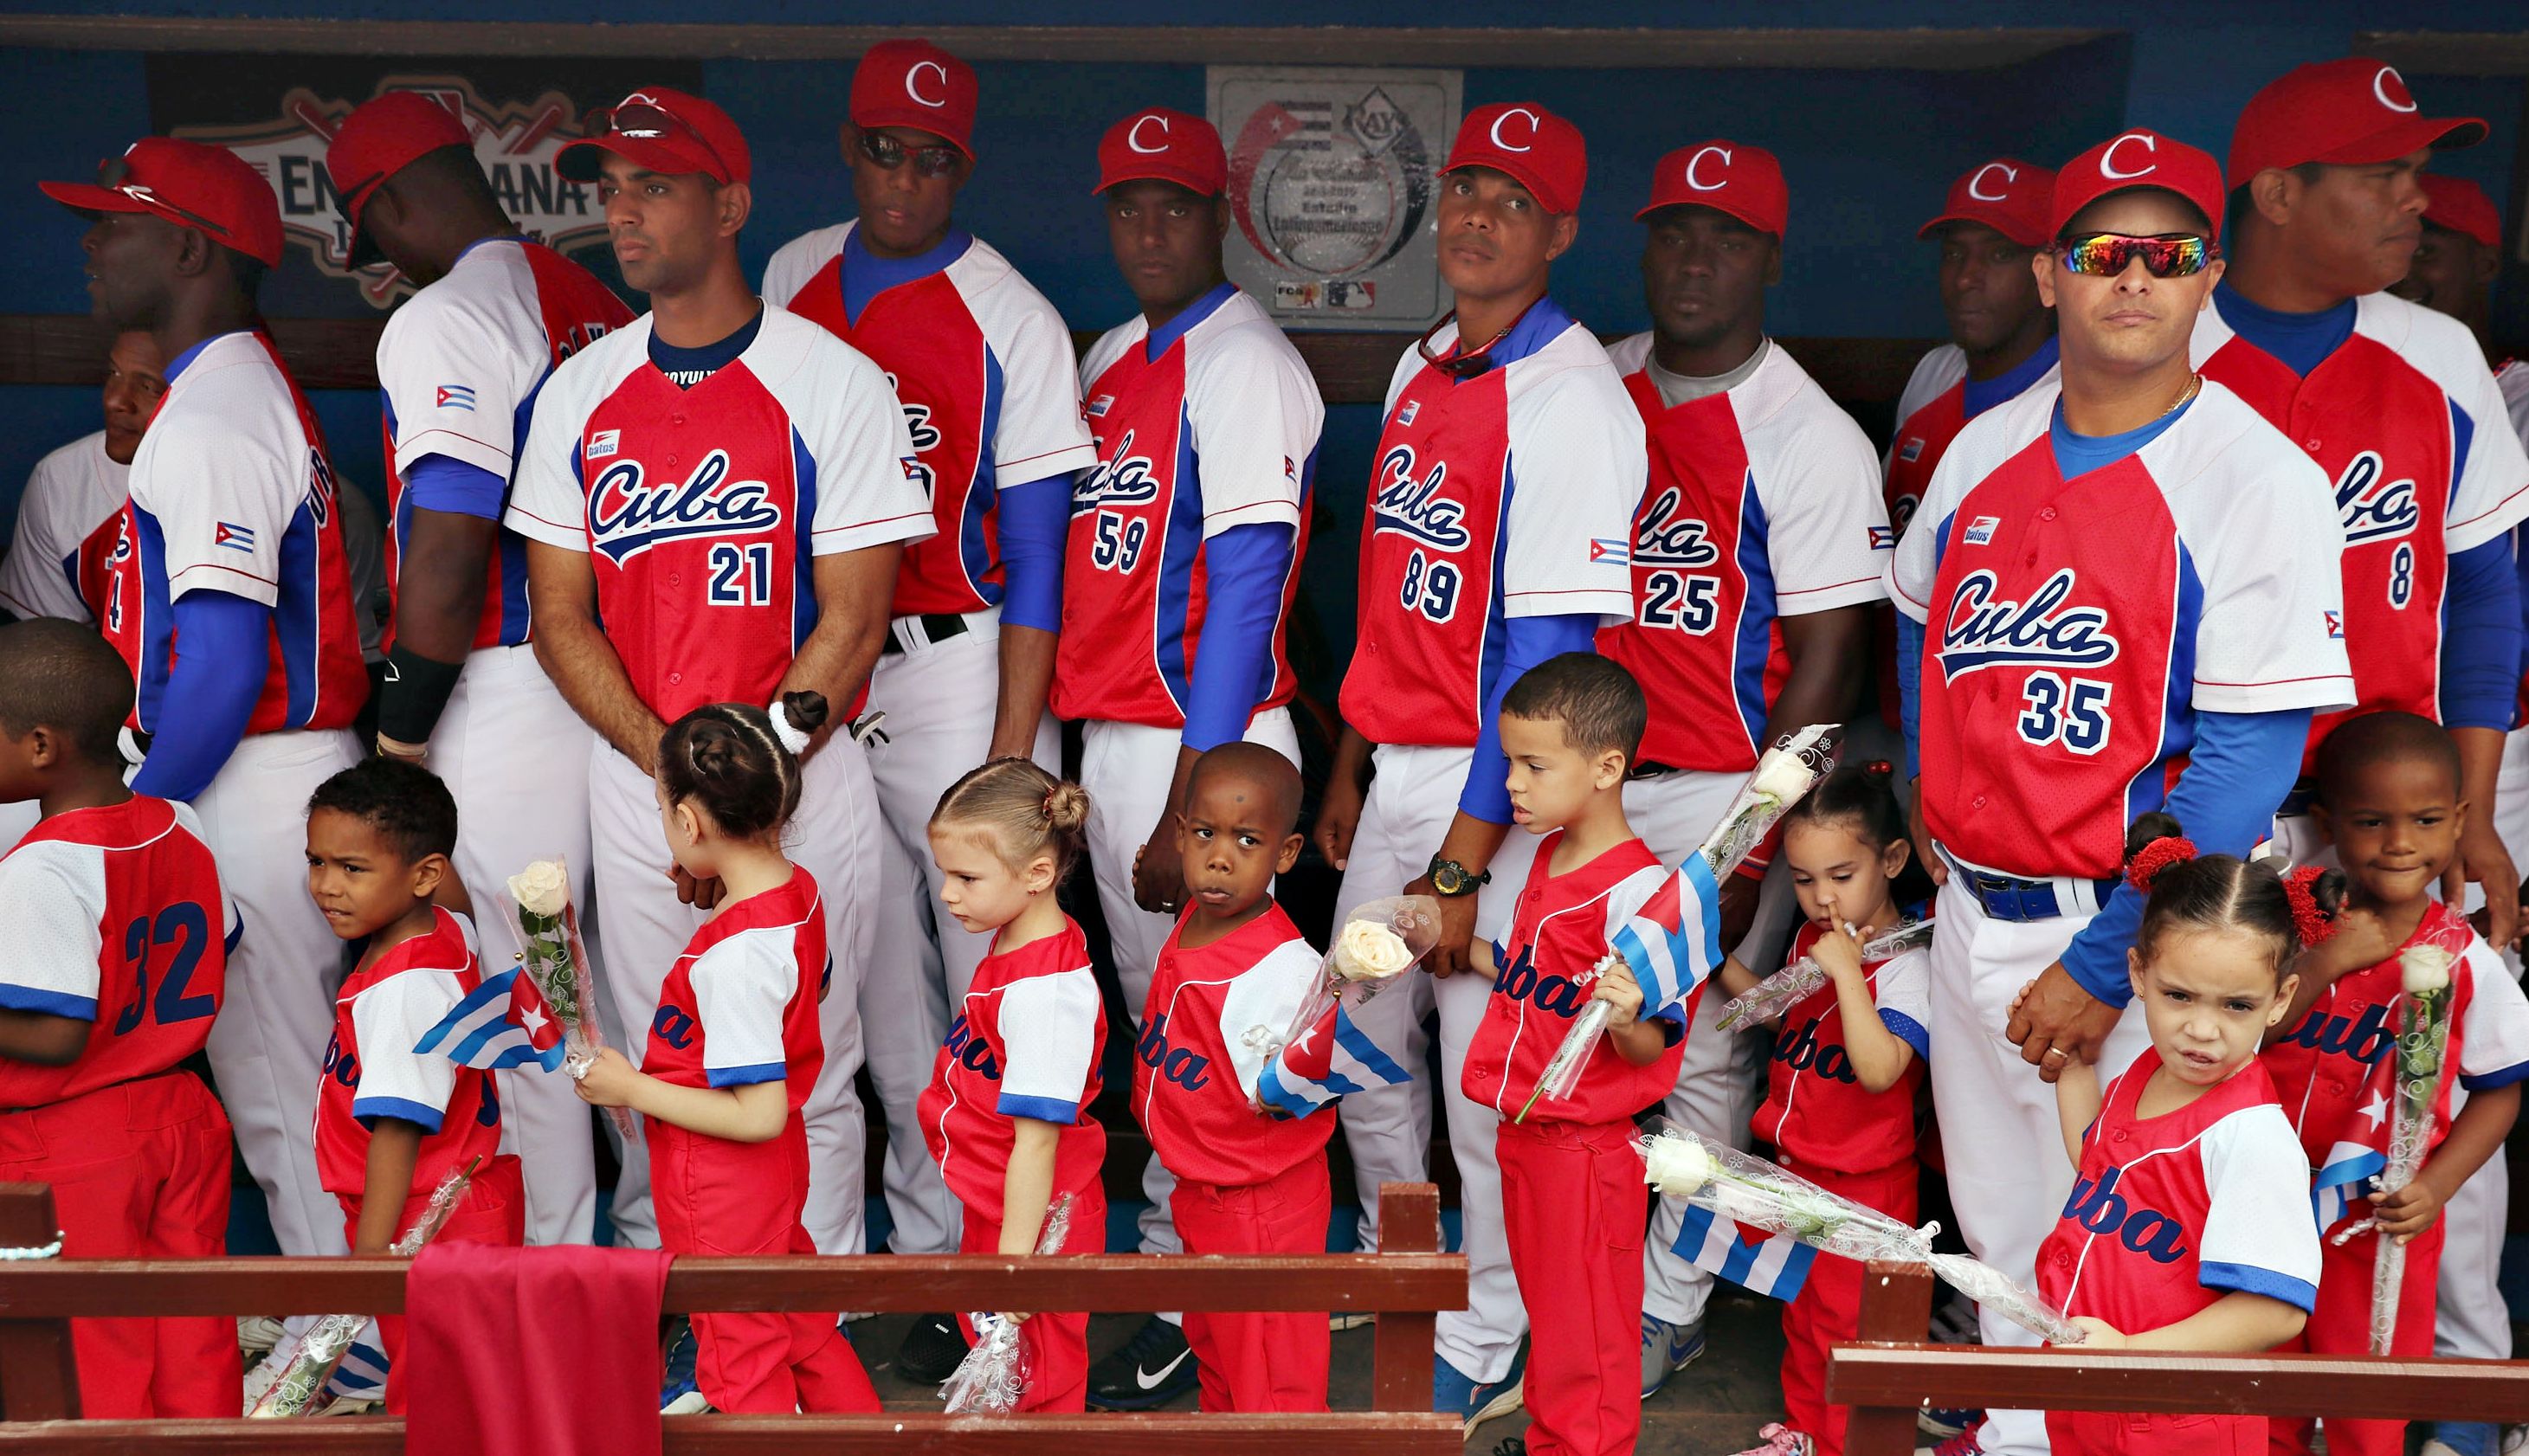 Cuban National Baseball Team Photos The Rays play the Cuban national